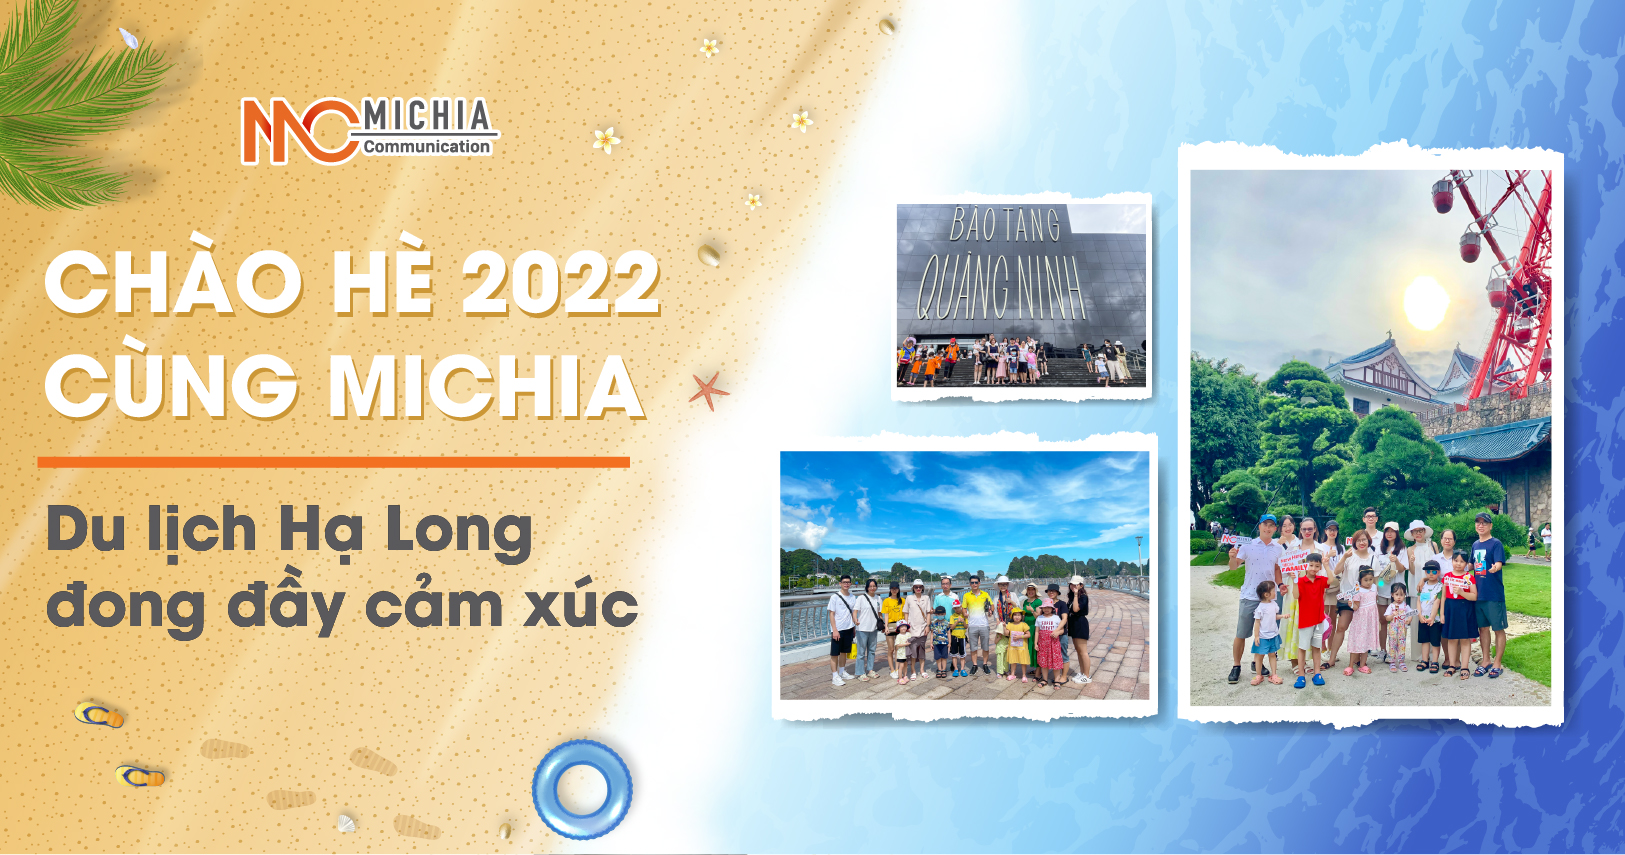 Chao-he-2022-cung-michia-du-lich-ha-long-dong-day-cam-xuc